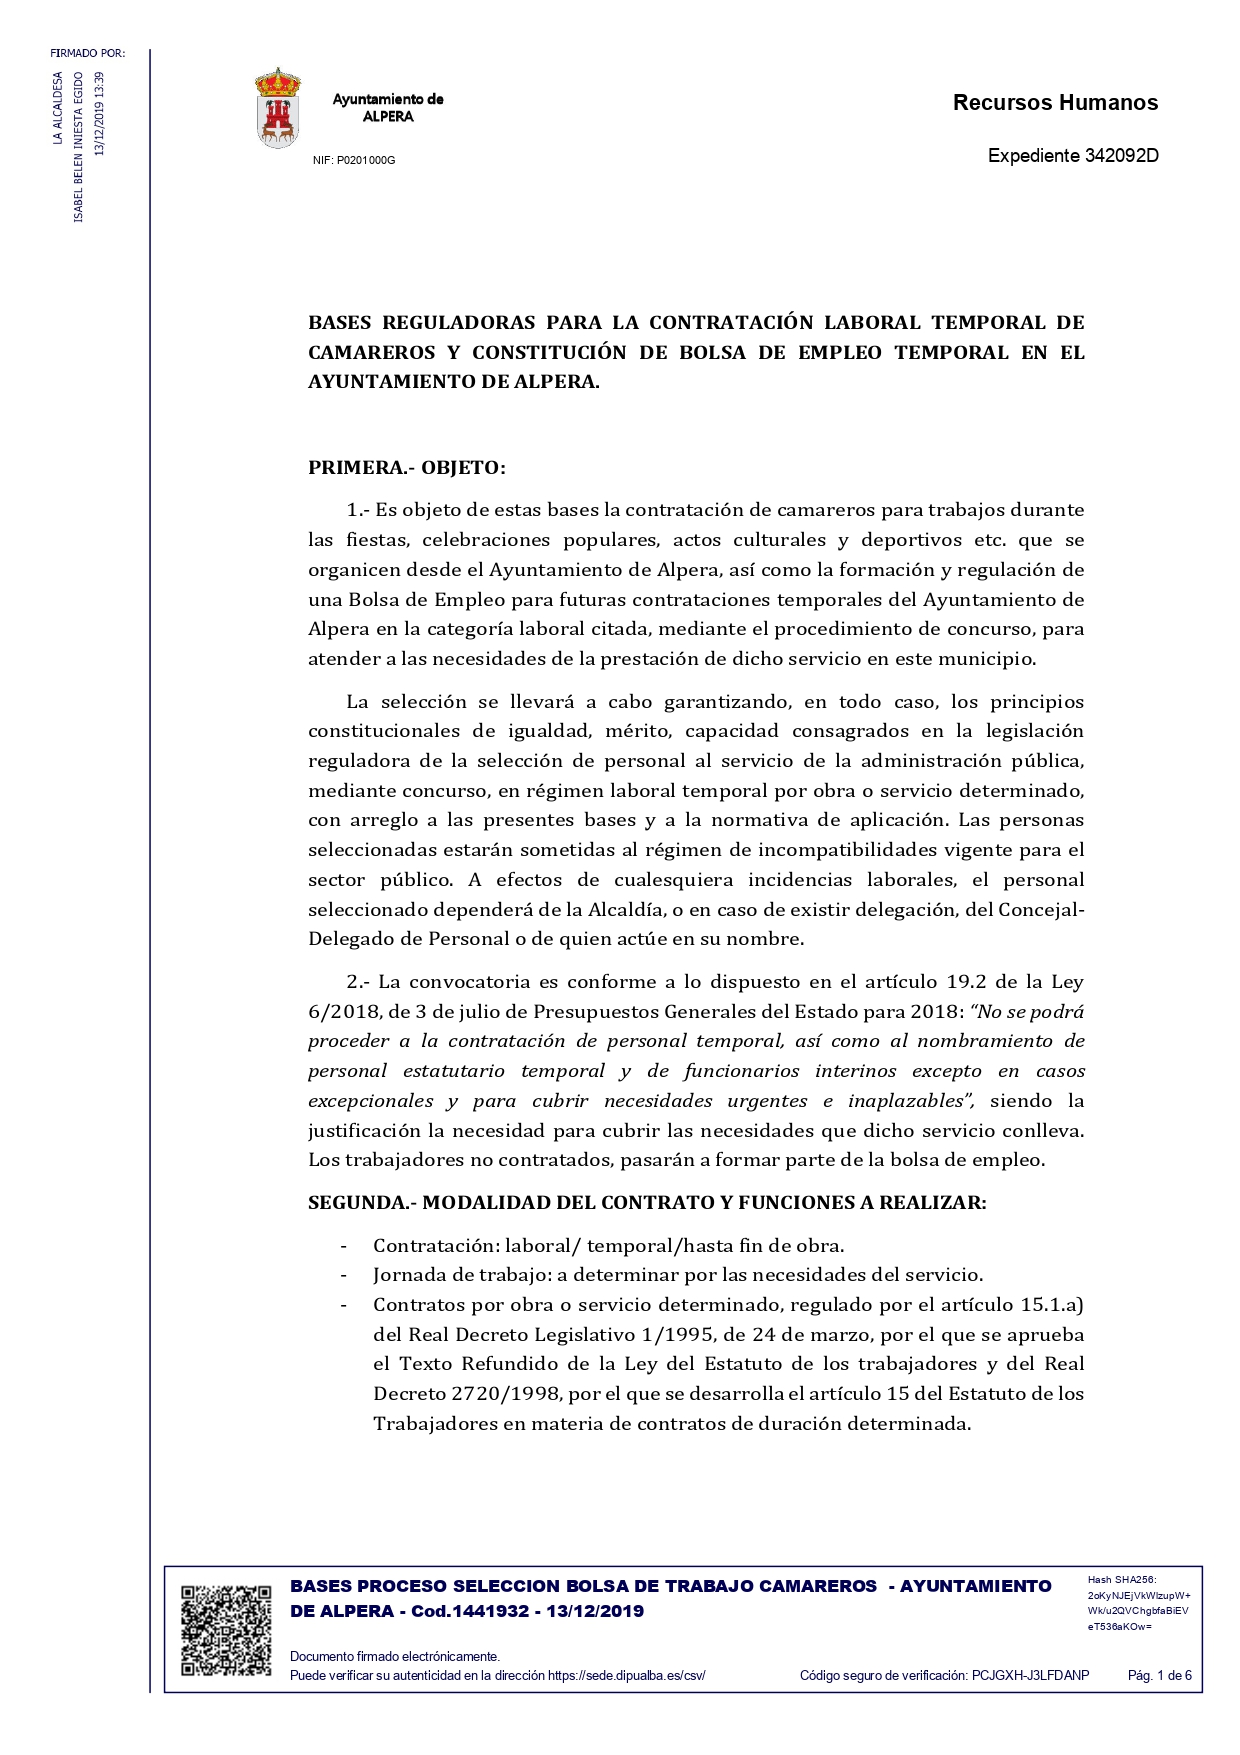 BASES PROCESO SELECCION BOLSA DE TRABAJO CAMAREROS FIRMADO pages to jpg 0001